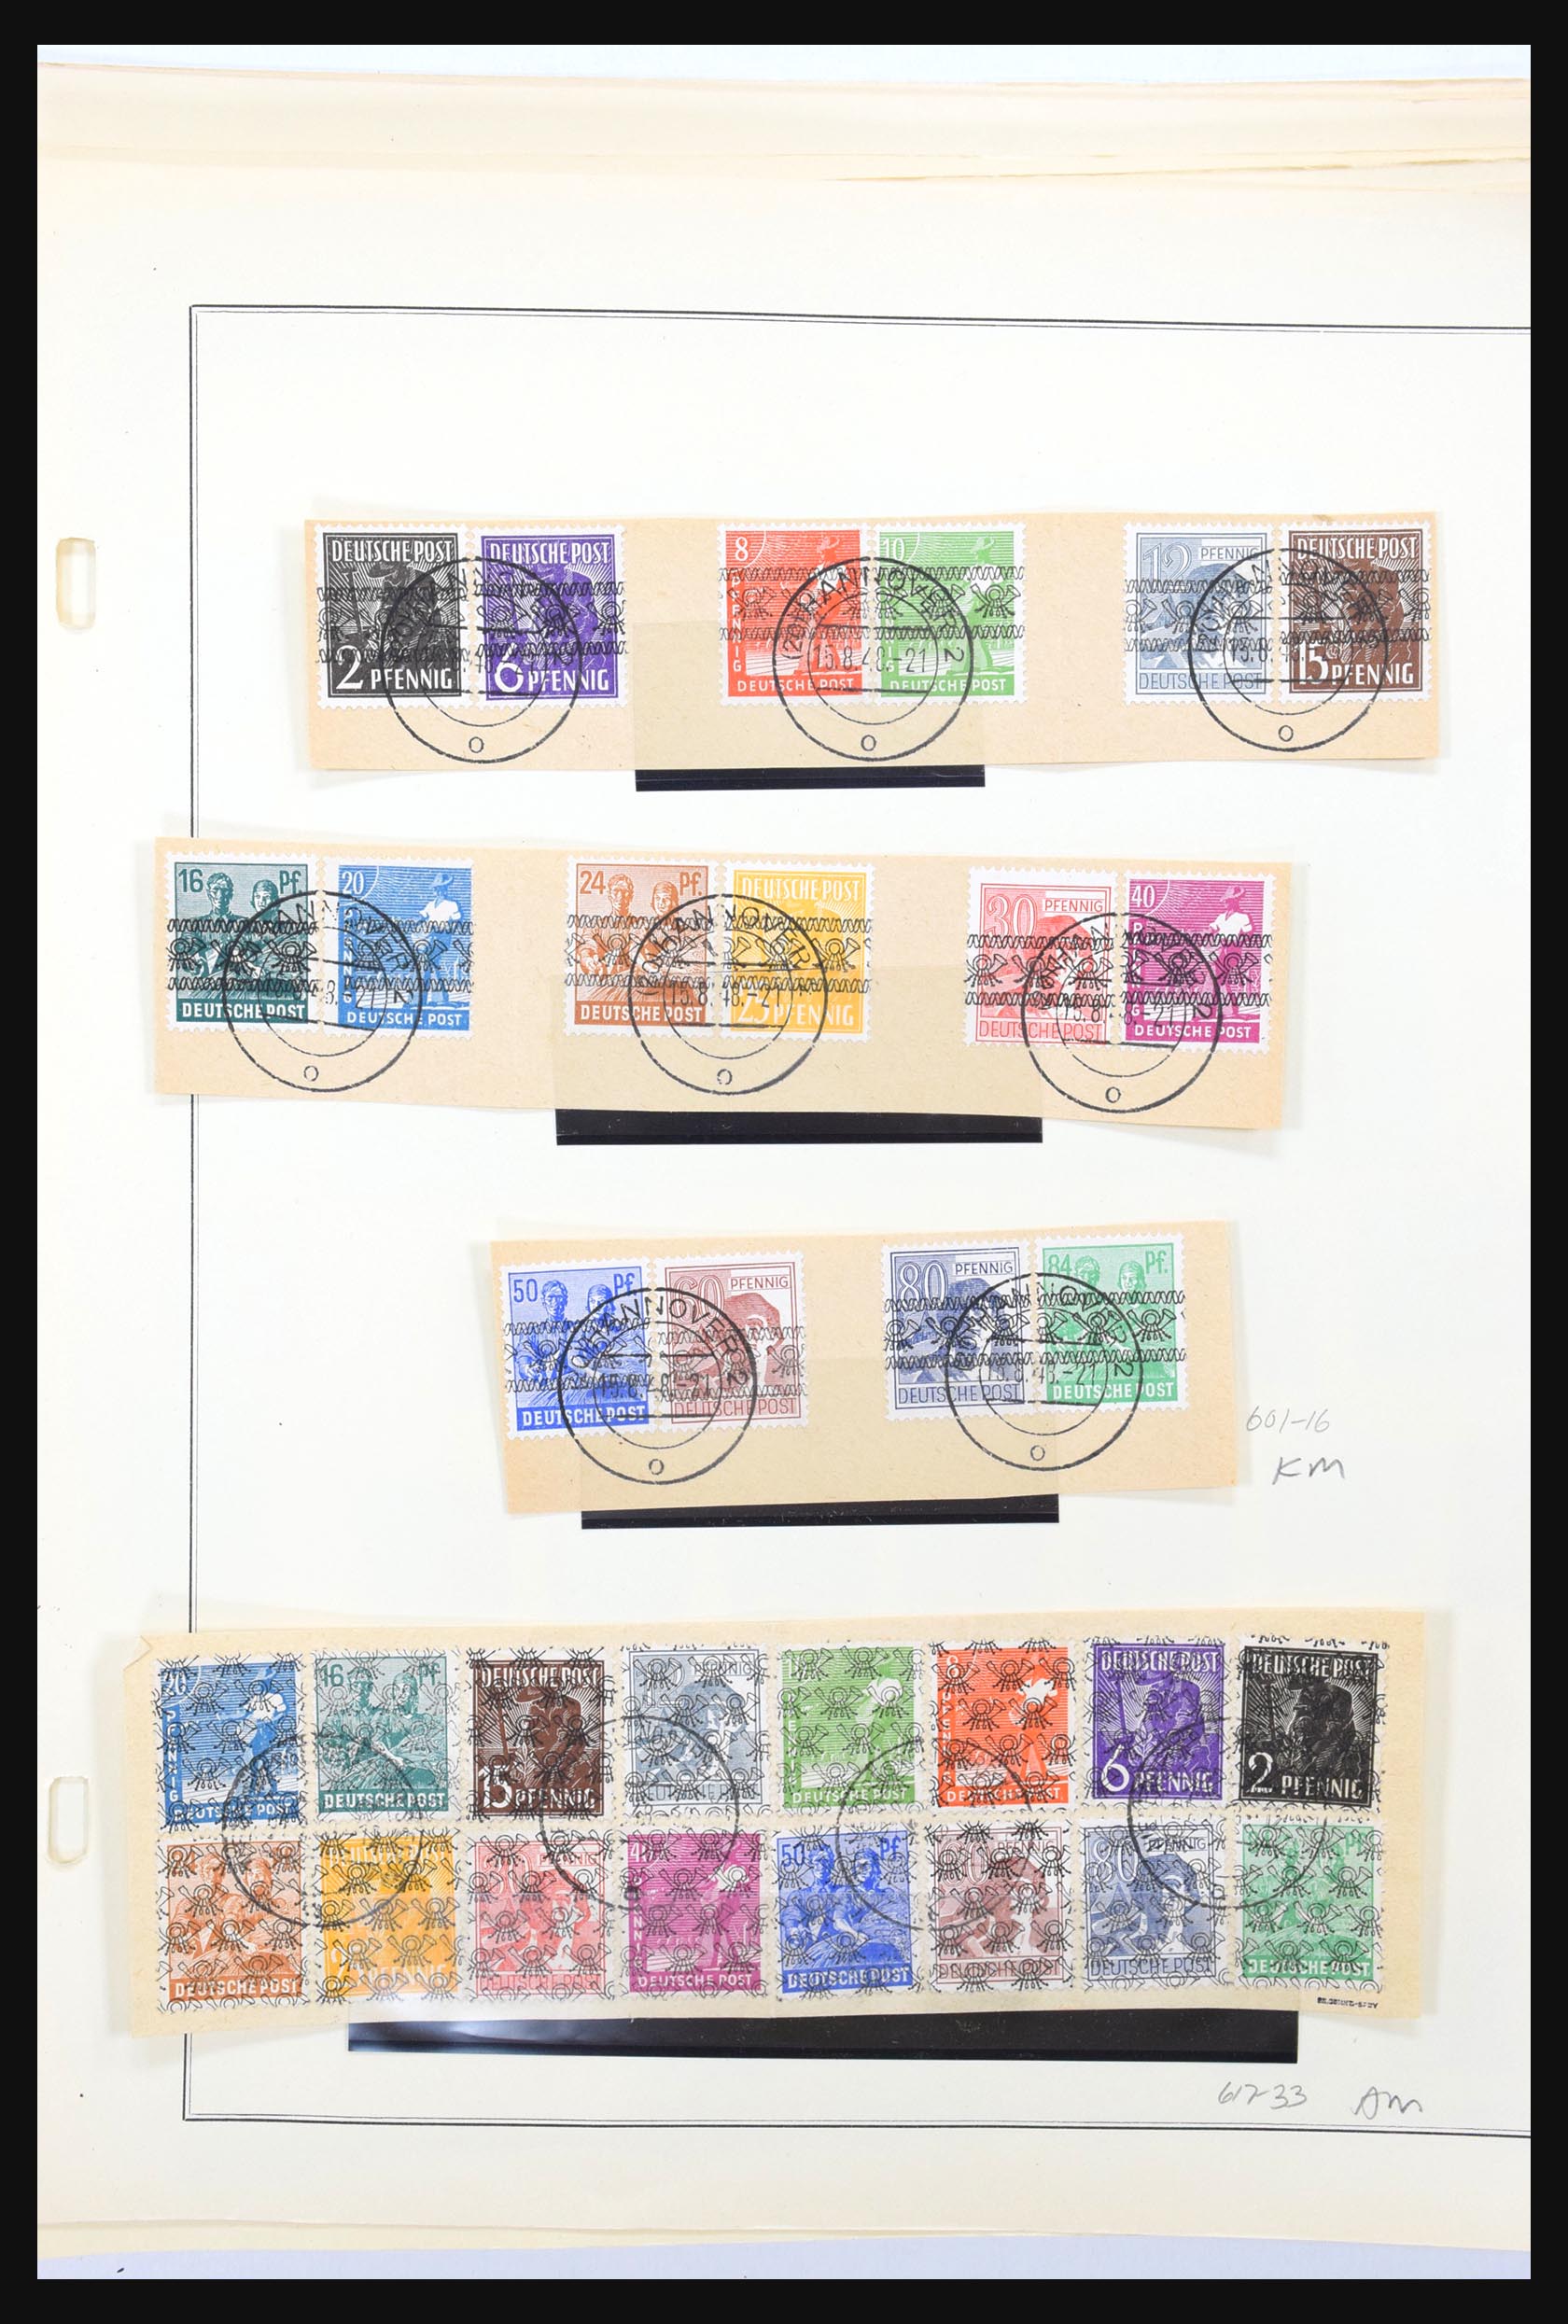 31300 246 - 31300 Duitsland superverzameling 1849-1990.